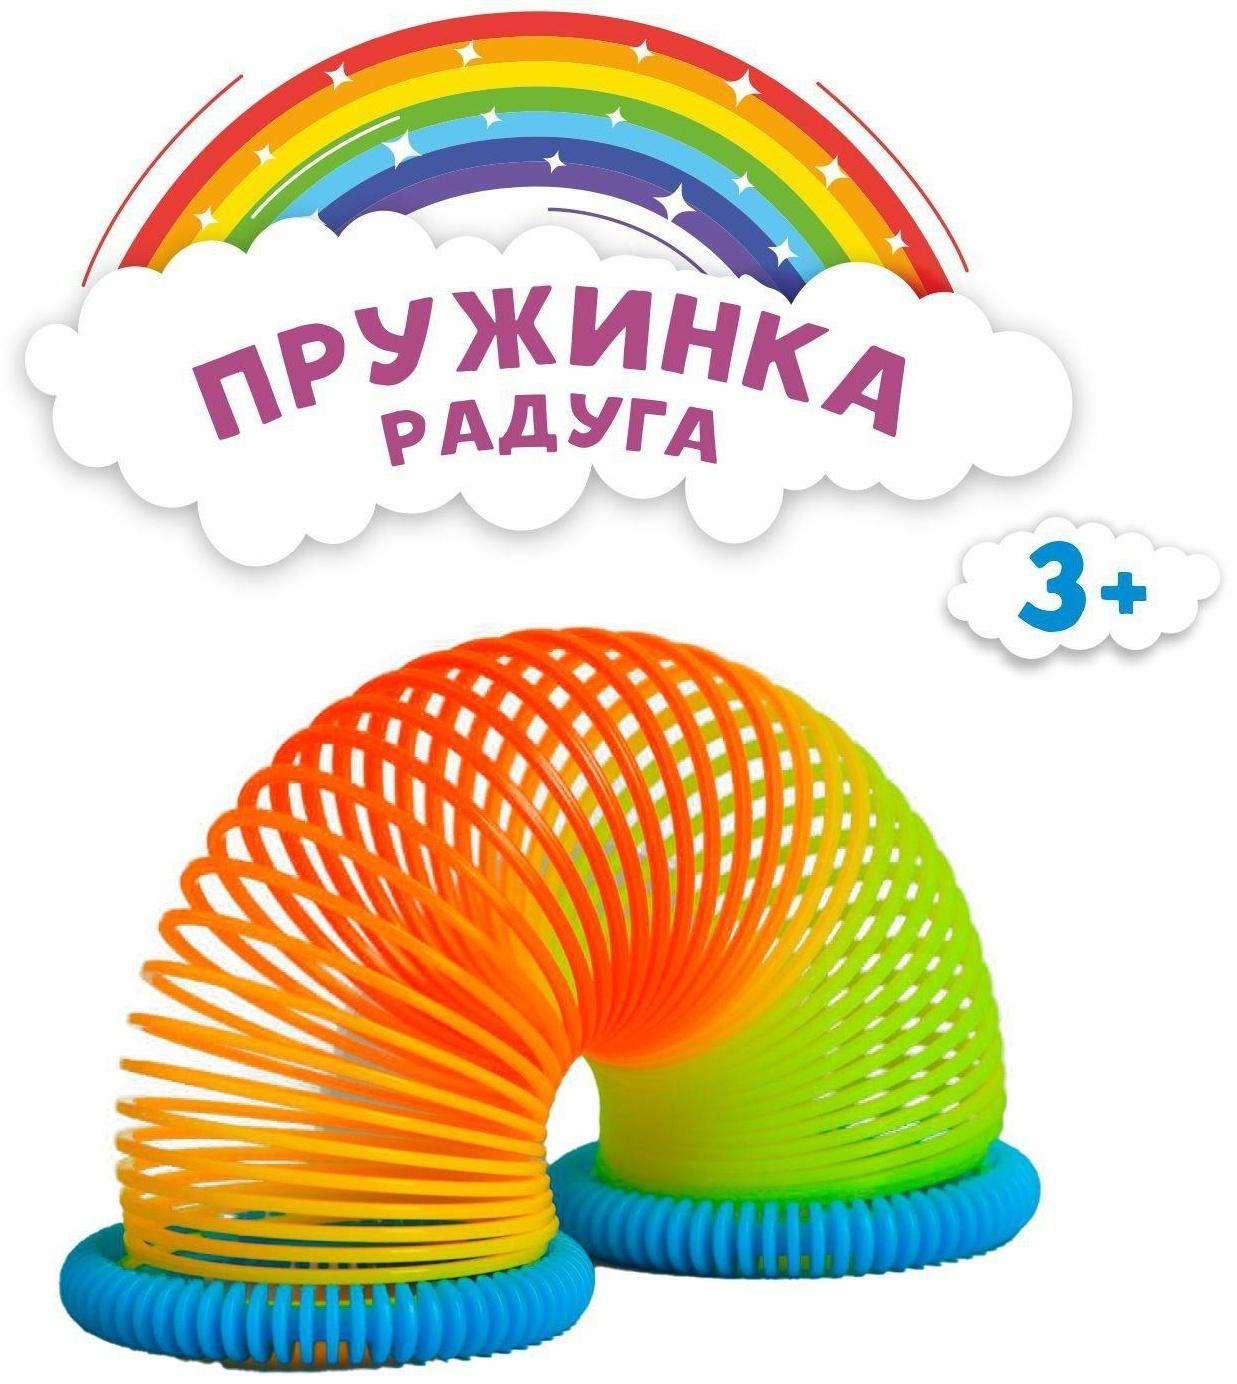 Пружинка-радуга «Цветная», цвета микс, 1 шт., 3501990